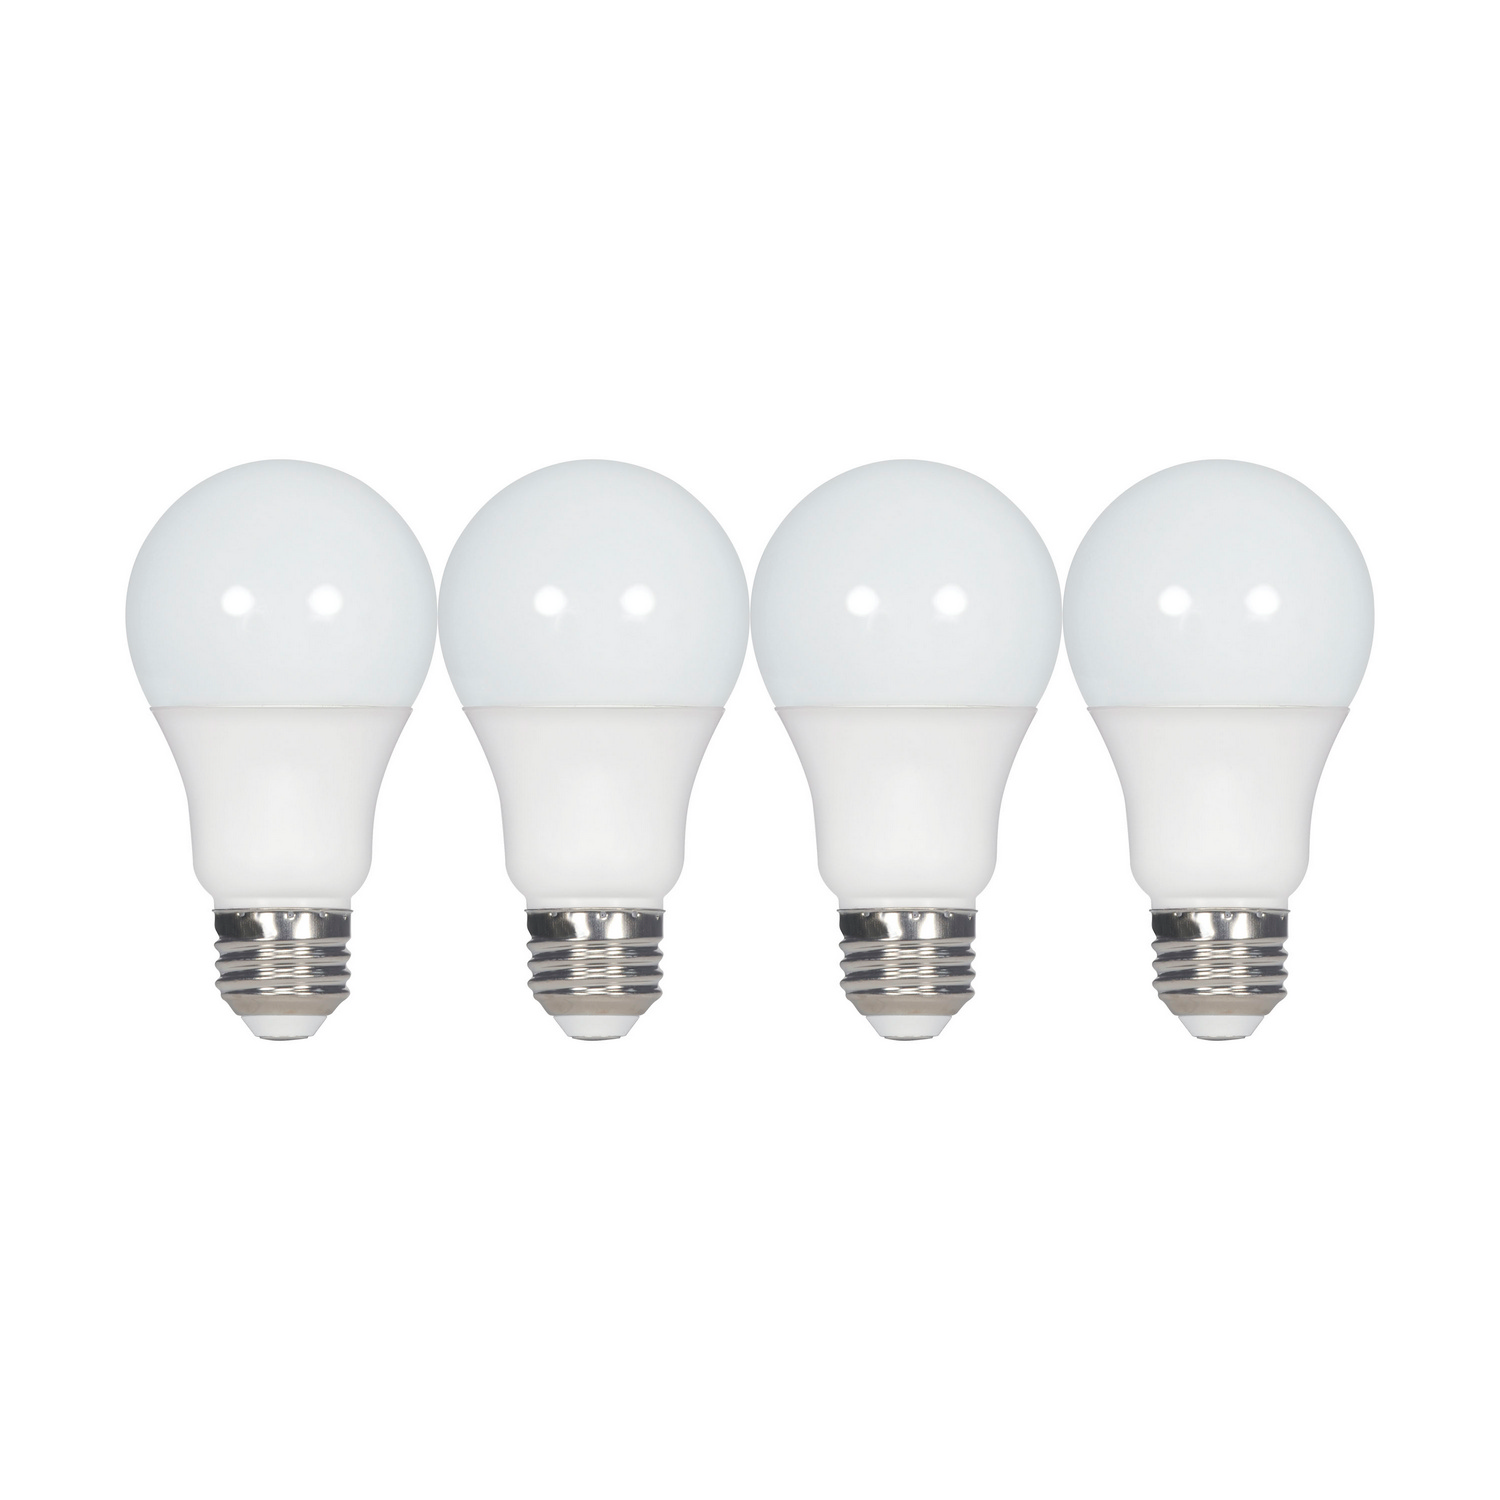 A15 LED Bulb 40 Watt Equivalent, 5W LED Light Bulbs, Soft White 2700K Energy Saving Low Watt Light Bulbs,E26 Base Bulb for Home Bedroom - 4/Pack